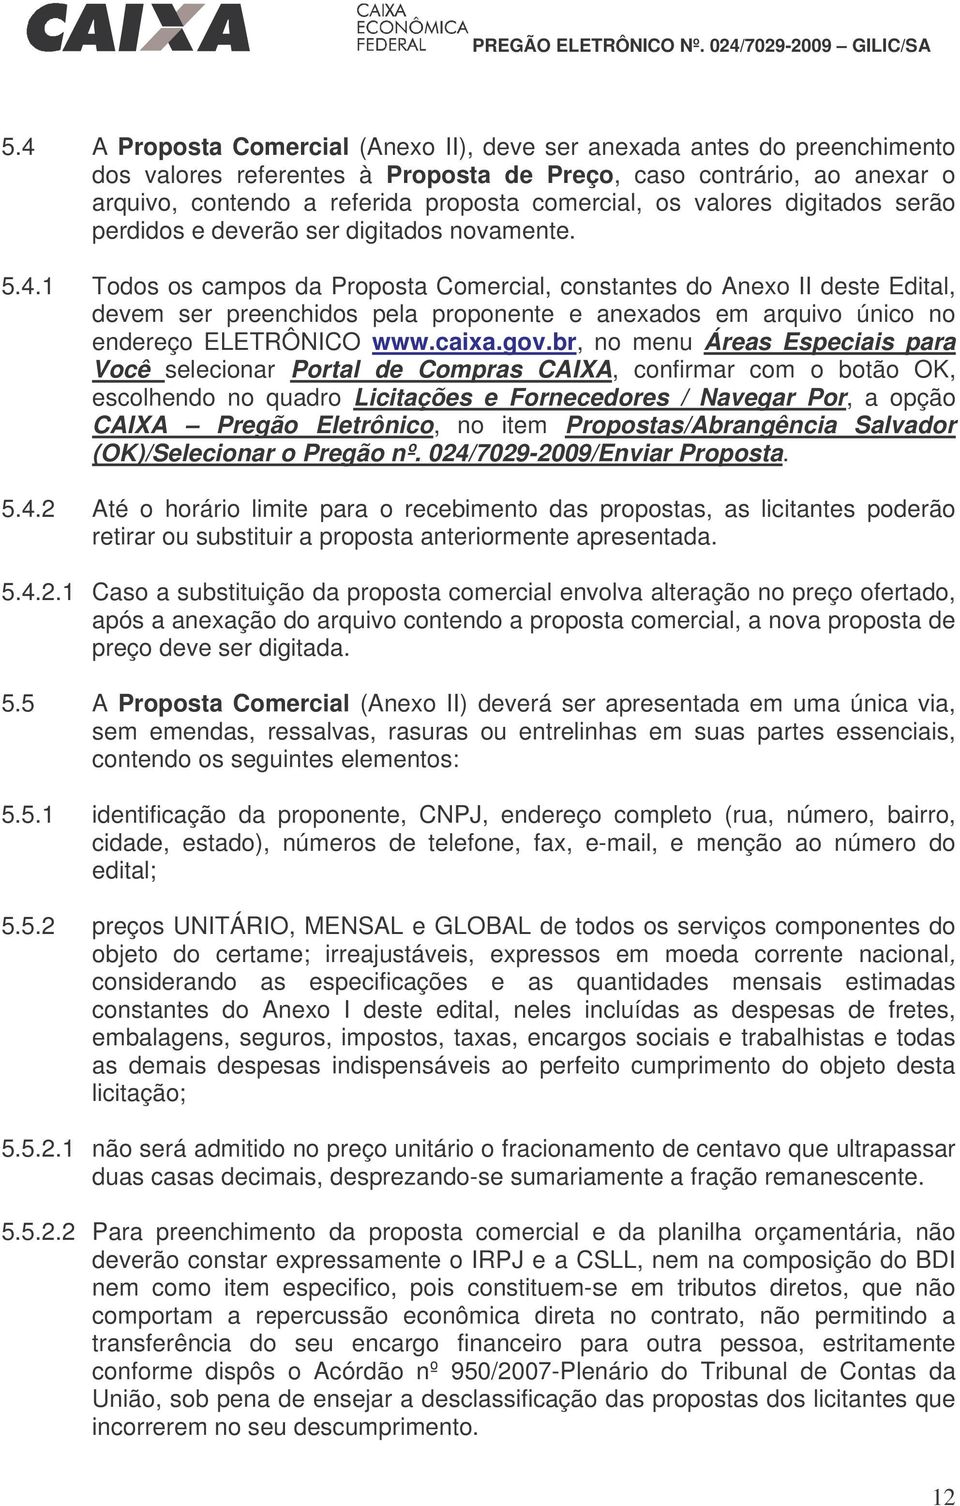 1 Todos os campos da Proposta Comercial, constantes do Anexo II deste Edital, devem ser preenchidos pela proponente e anexados em arquivo único no endereço ELETRÔNICO www.caixa.gov.